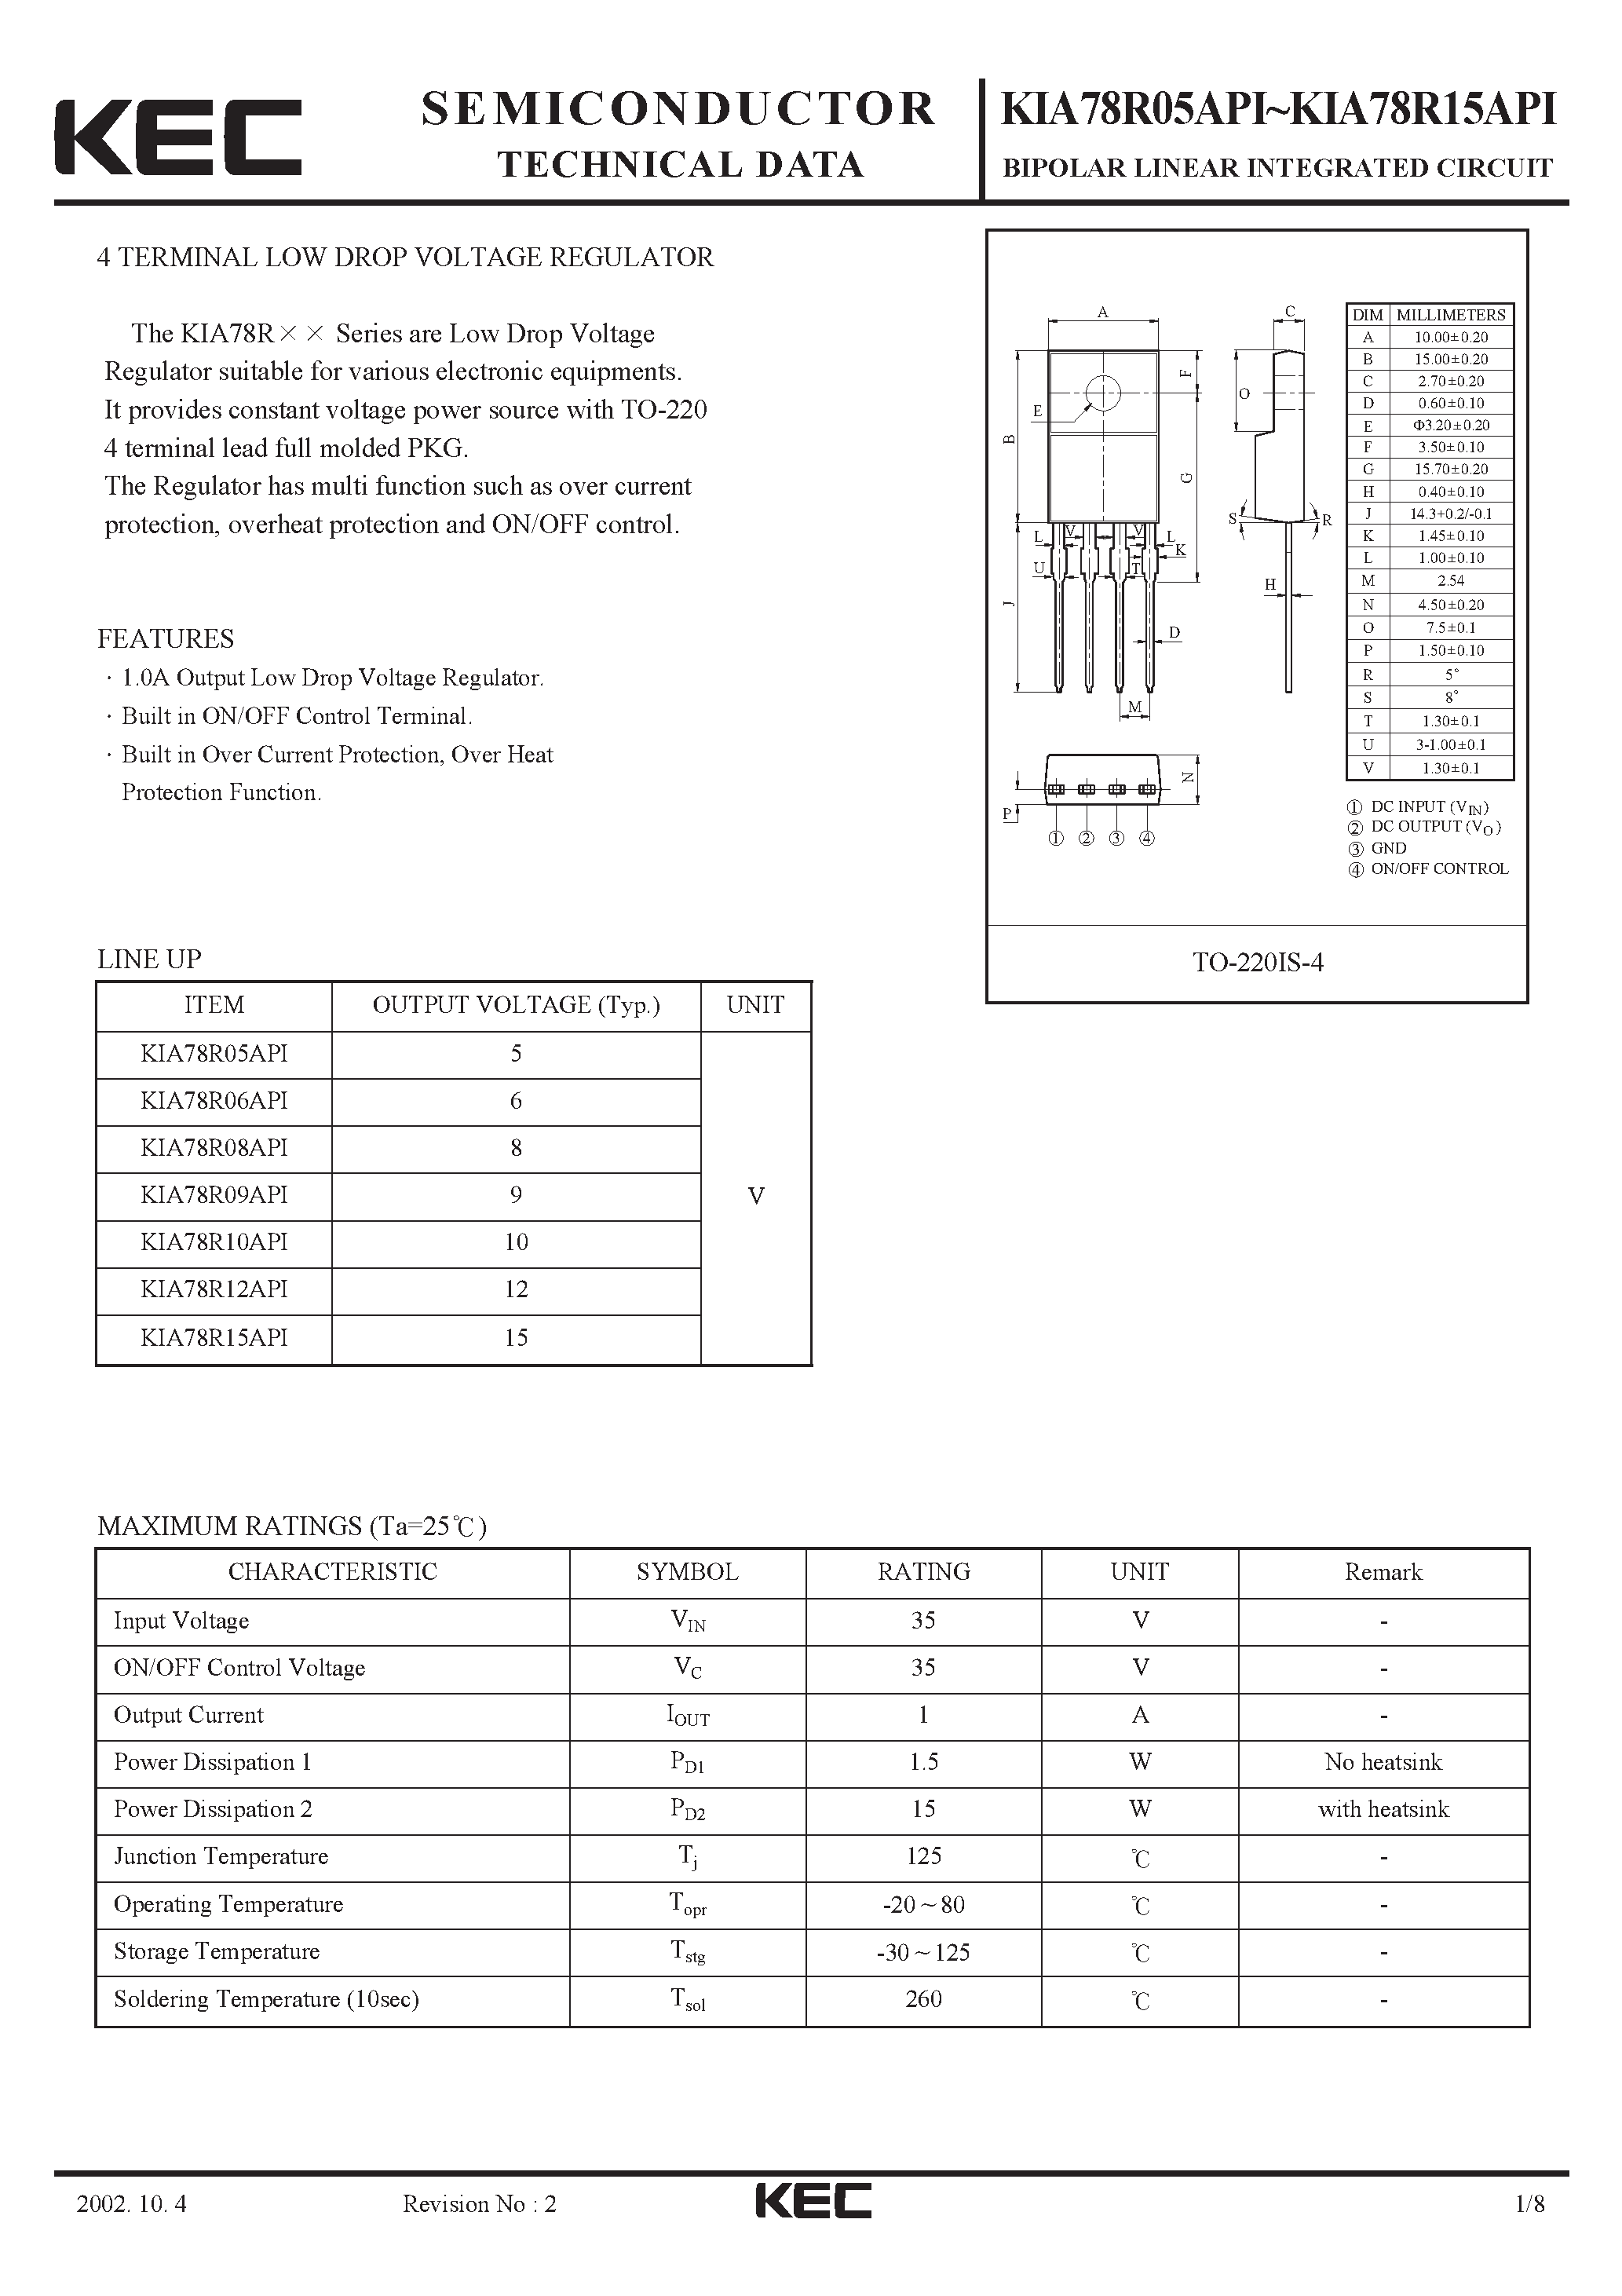 Datasheet KIA78R12API - BIPOLAR LINEAR INTEGRATED CIRCUIT (4 TERMINAL LOW DROP VOLTAGE REGULATOR) page 1